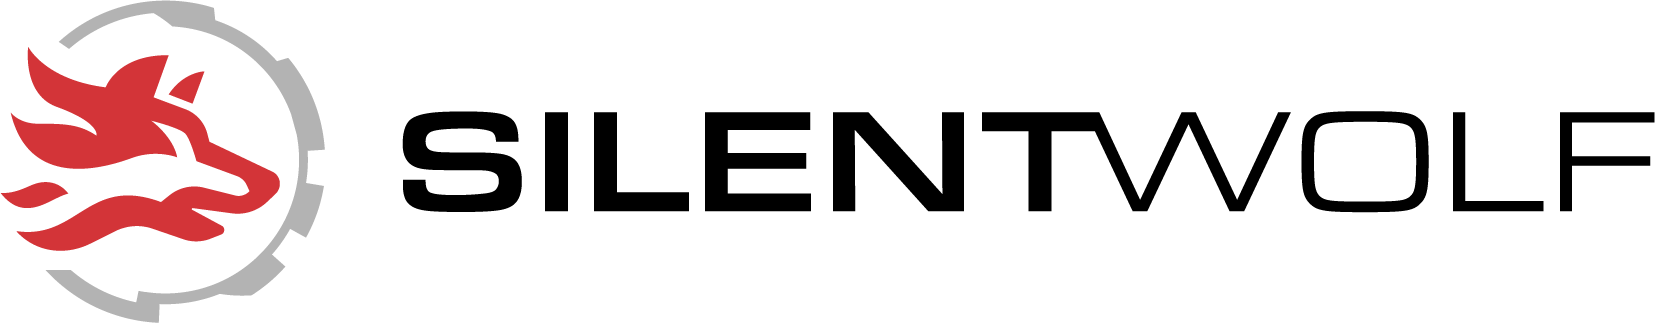 SilentWolf footer logo